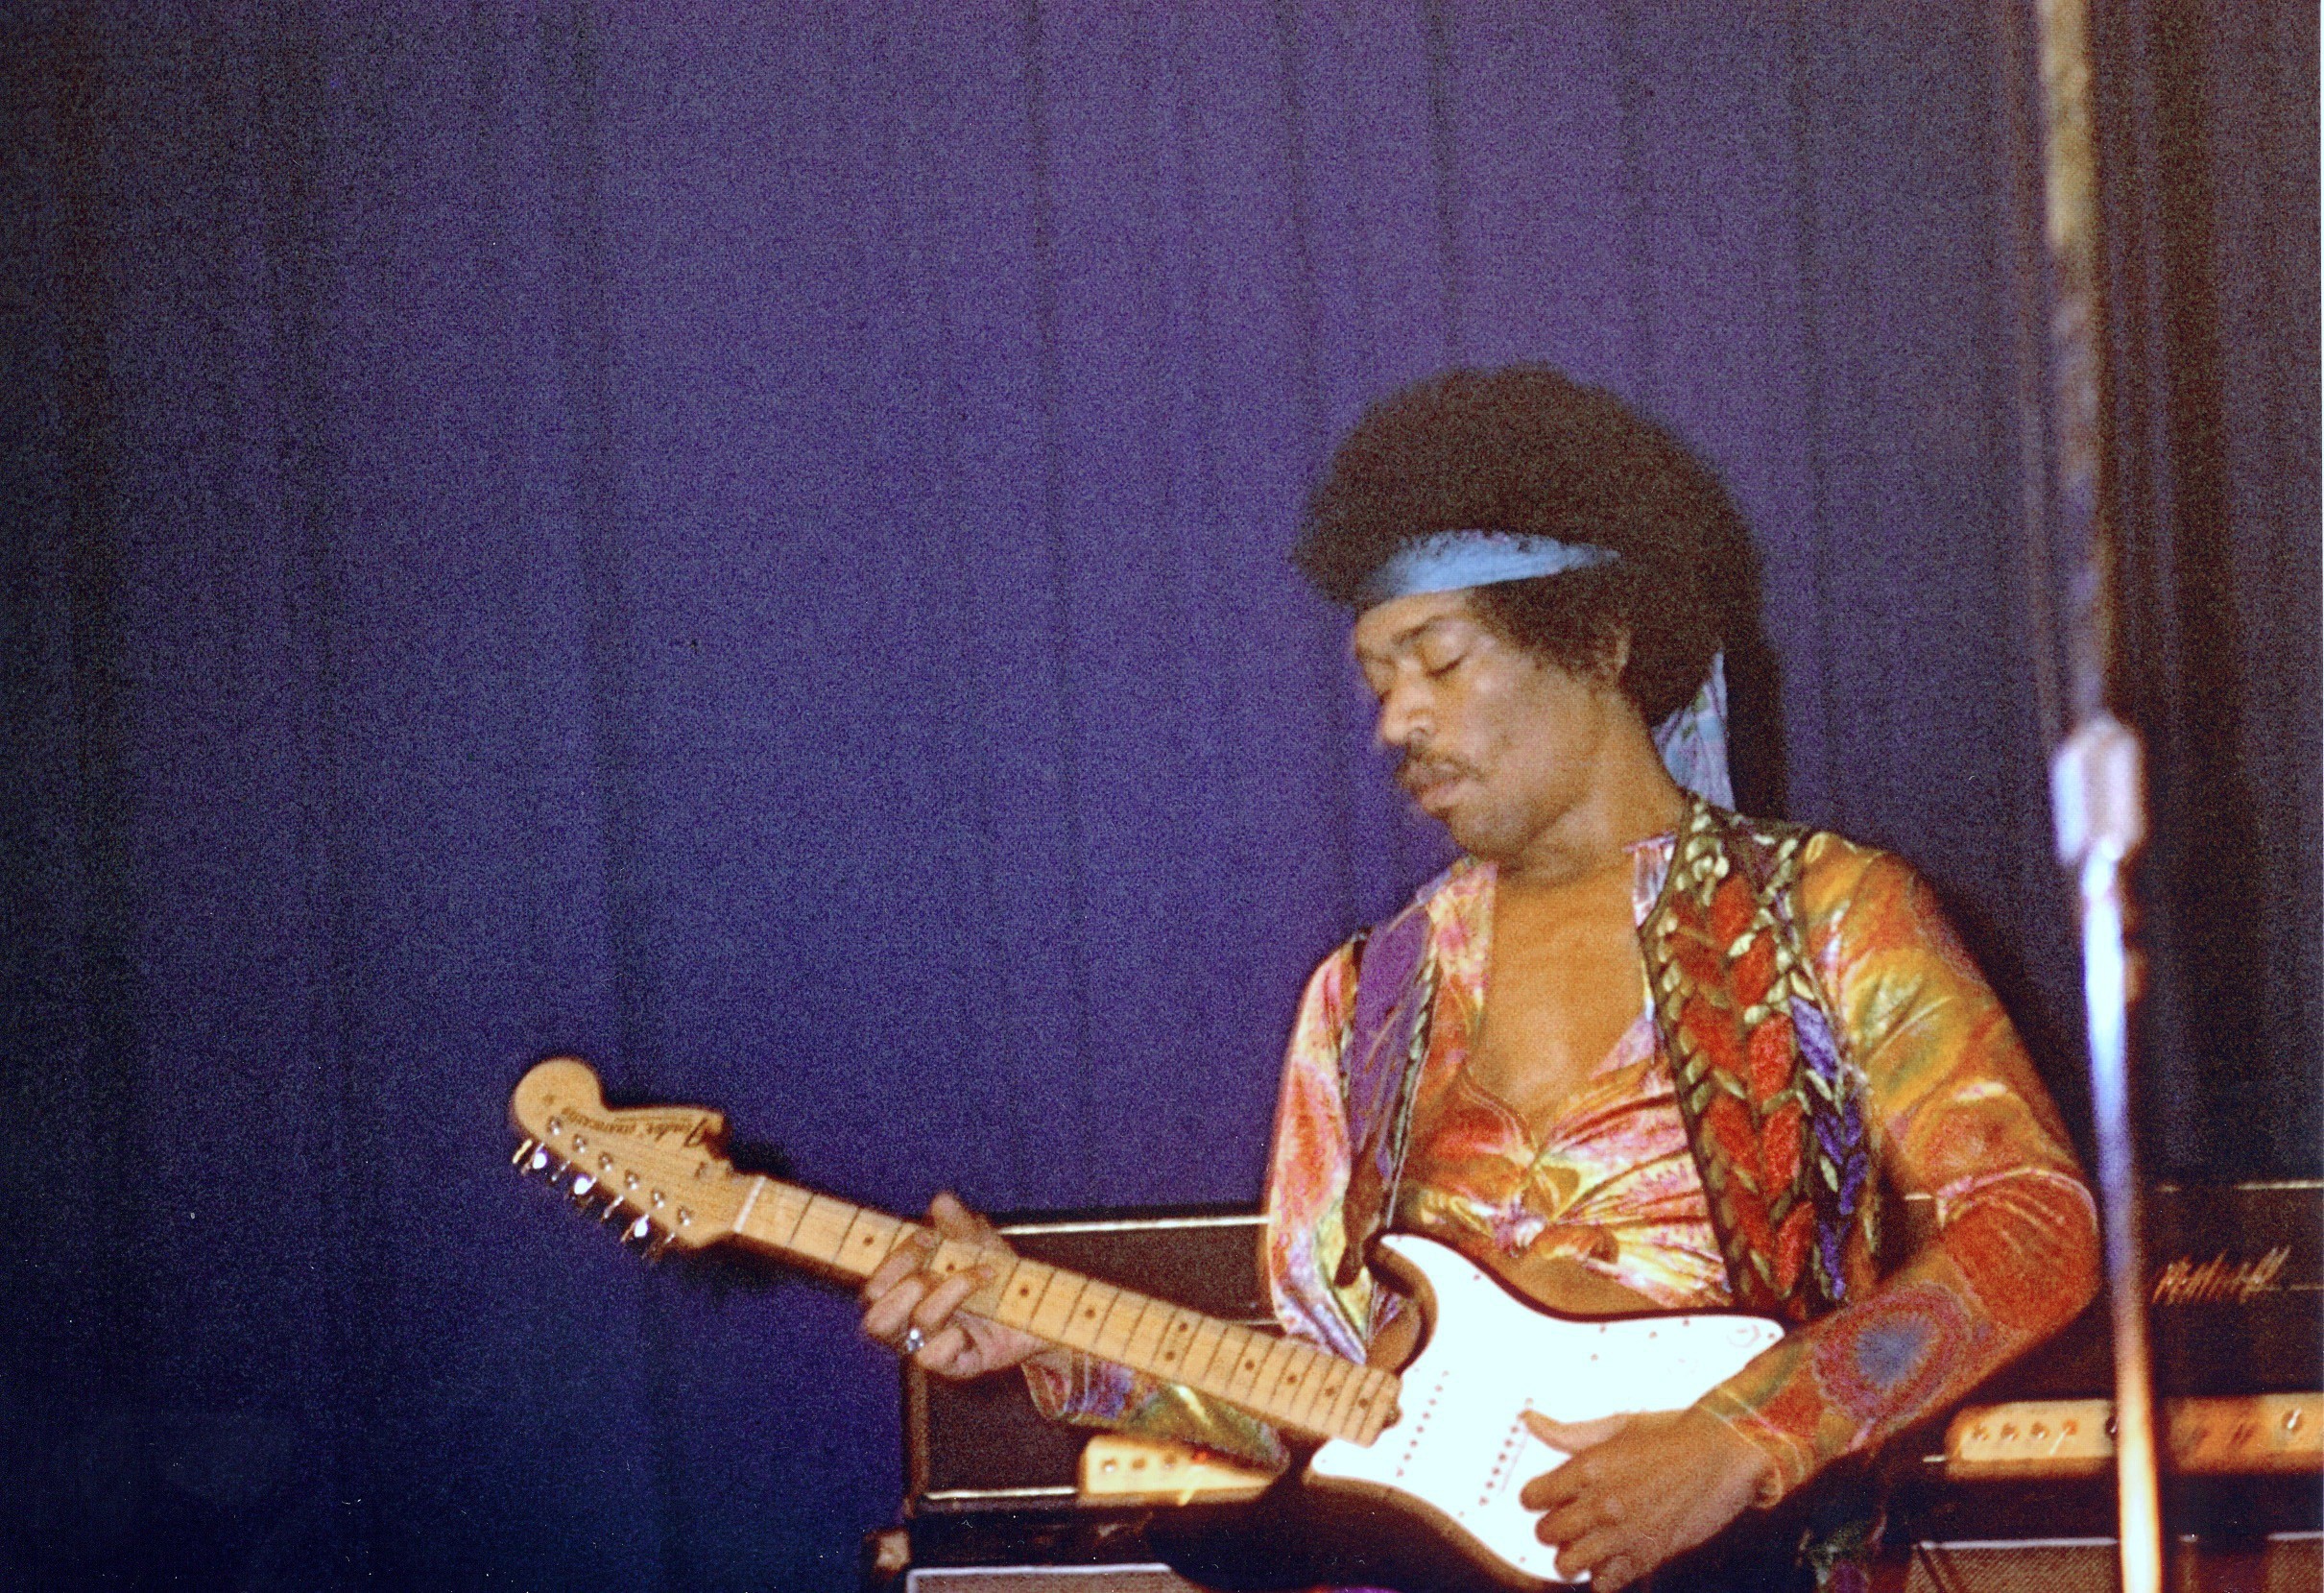 Miért volt Jimi Hendrix minden idők legbefolyásosabb gitárosa?